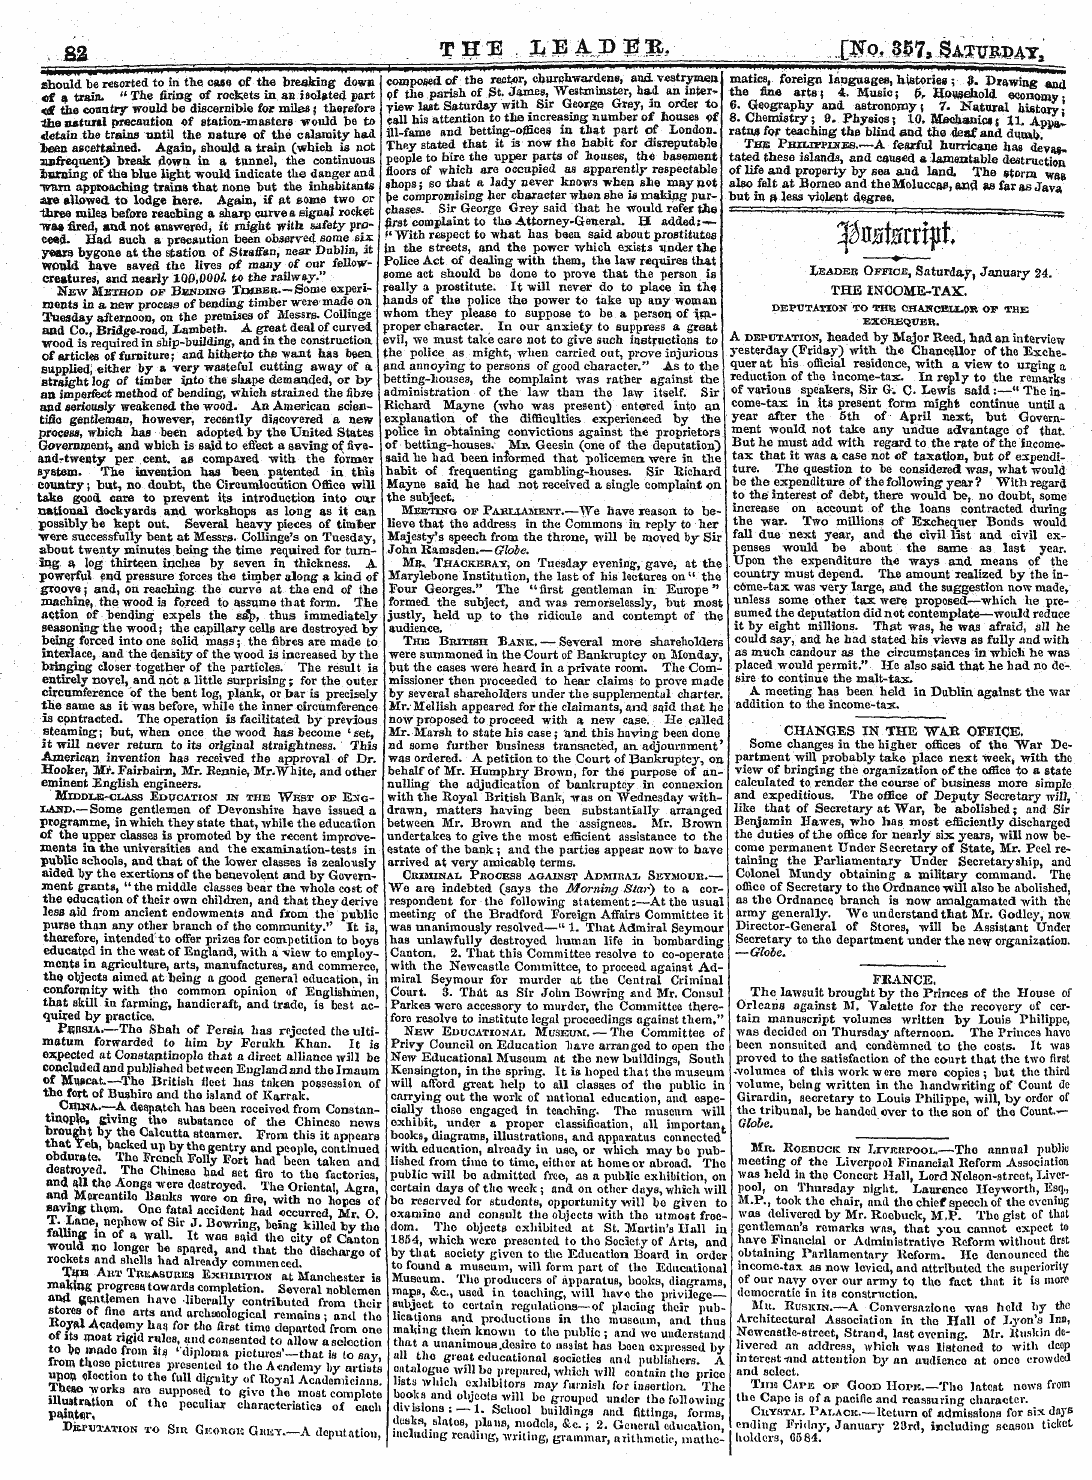 Leader (1850-1860): jS F Y, 2nd edition - S3 Vpleoei D^Q:M 7, M^Mmt I